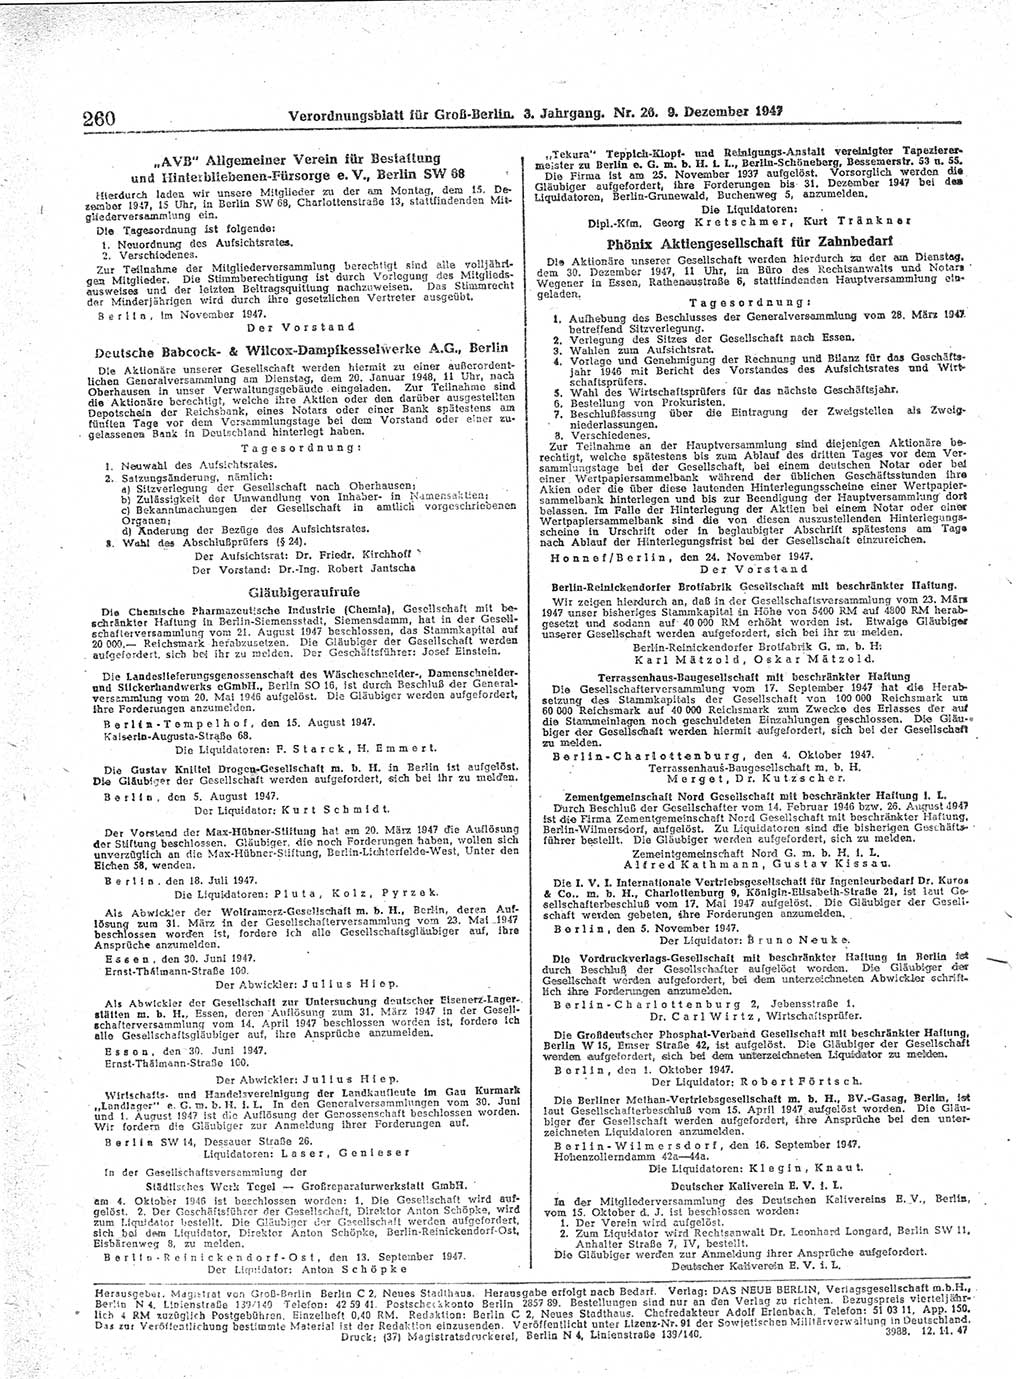 Verordnungsblatt (VOBl.) für Groß-Berlin 1947, Seite 260 (VOBl. Bln. 1947, S. 260)